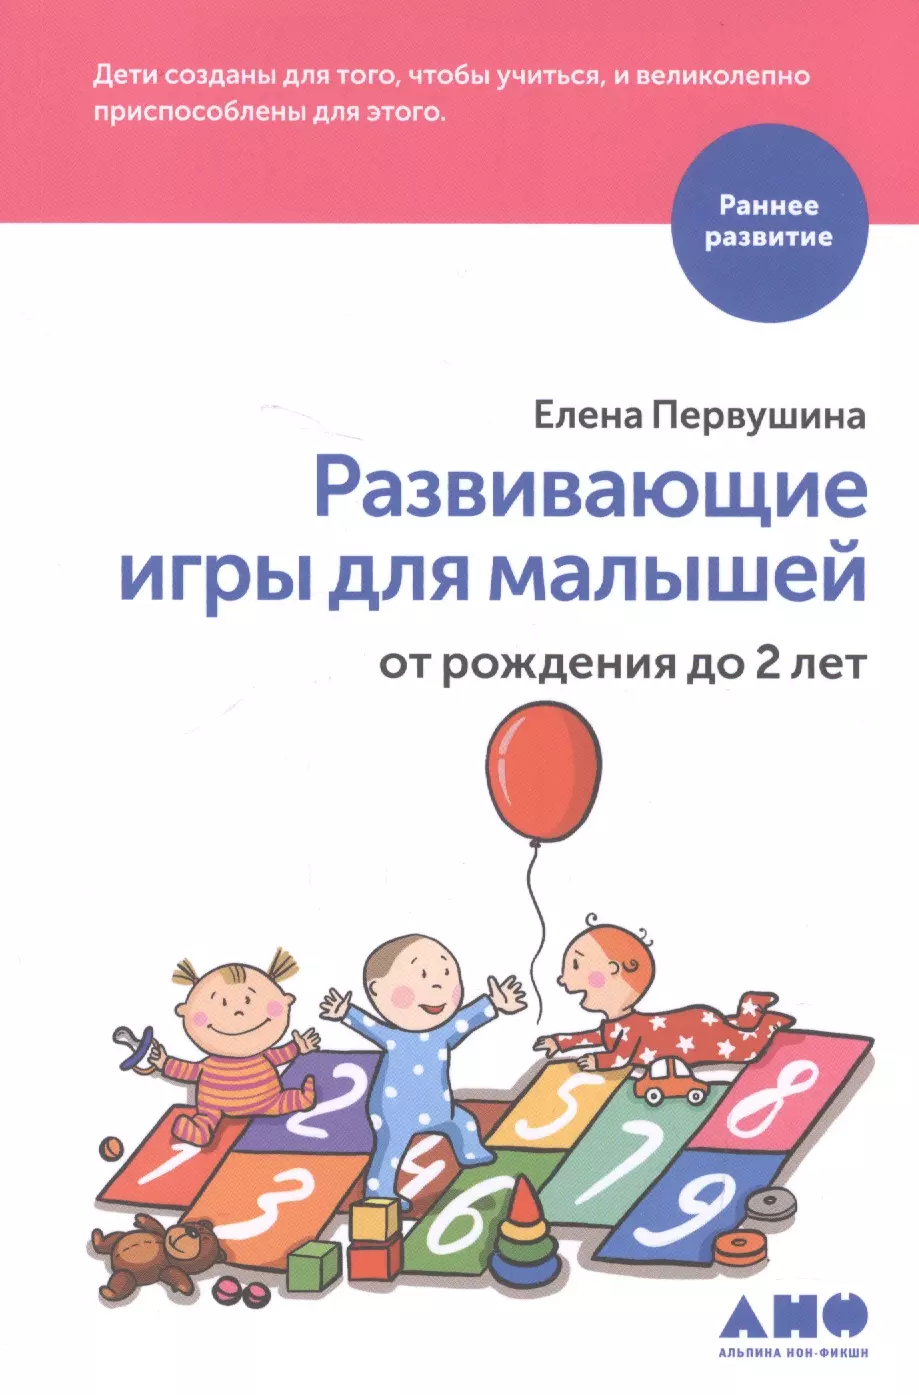 Первушина Елена Владимировна - Развивающие игры для малышей от рождения до 2 лет